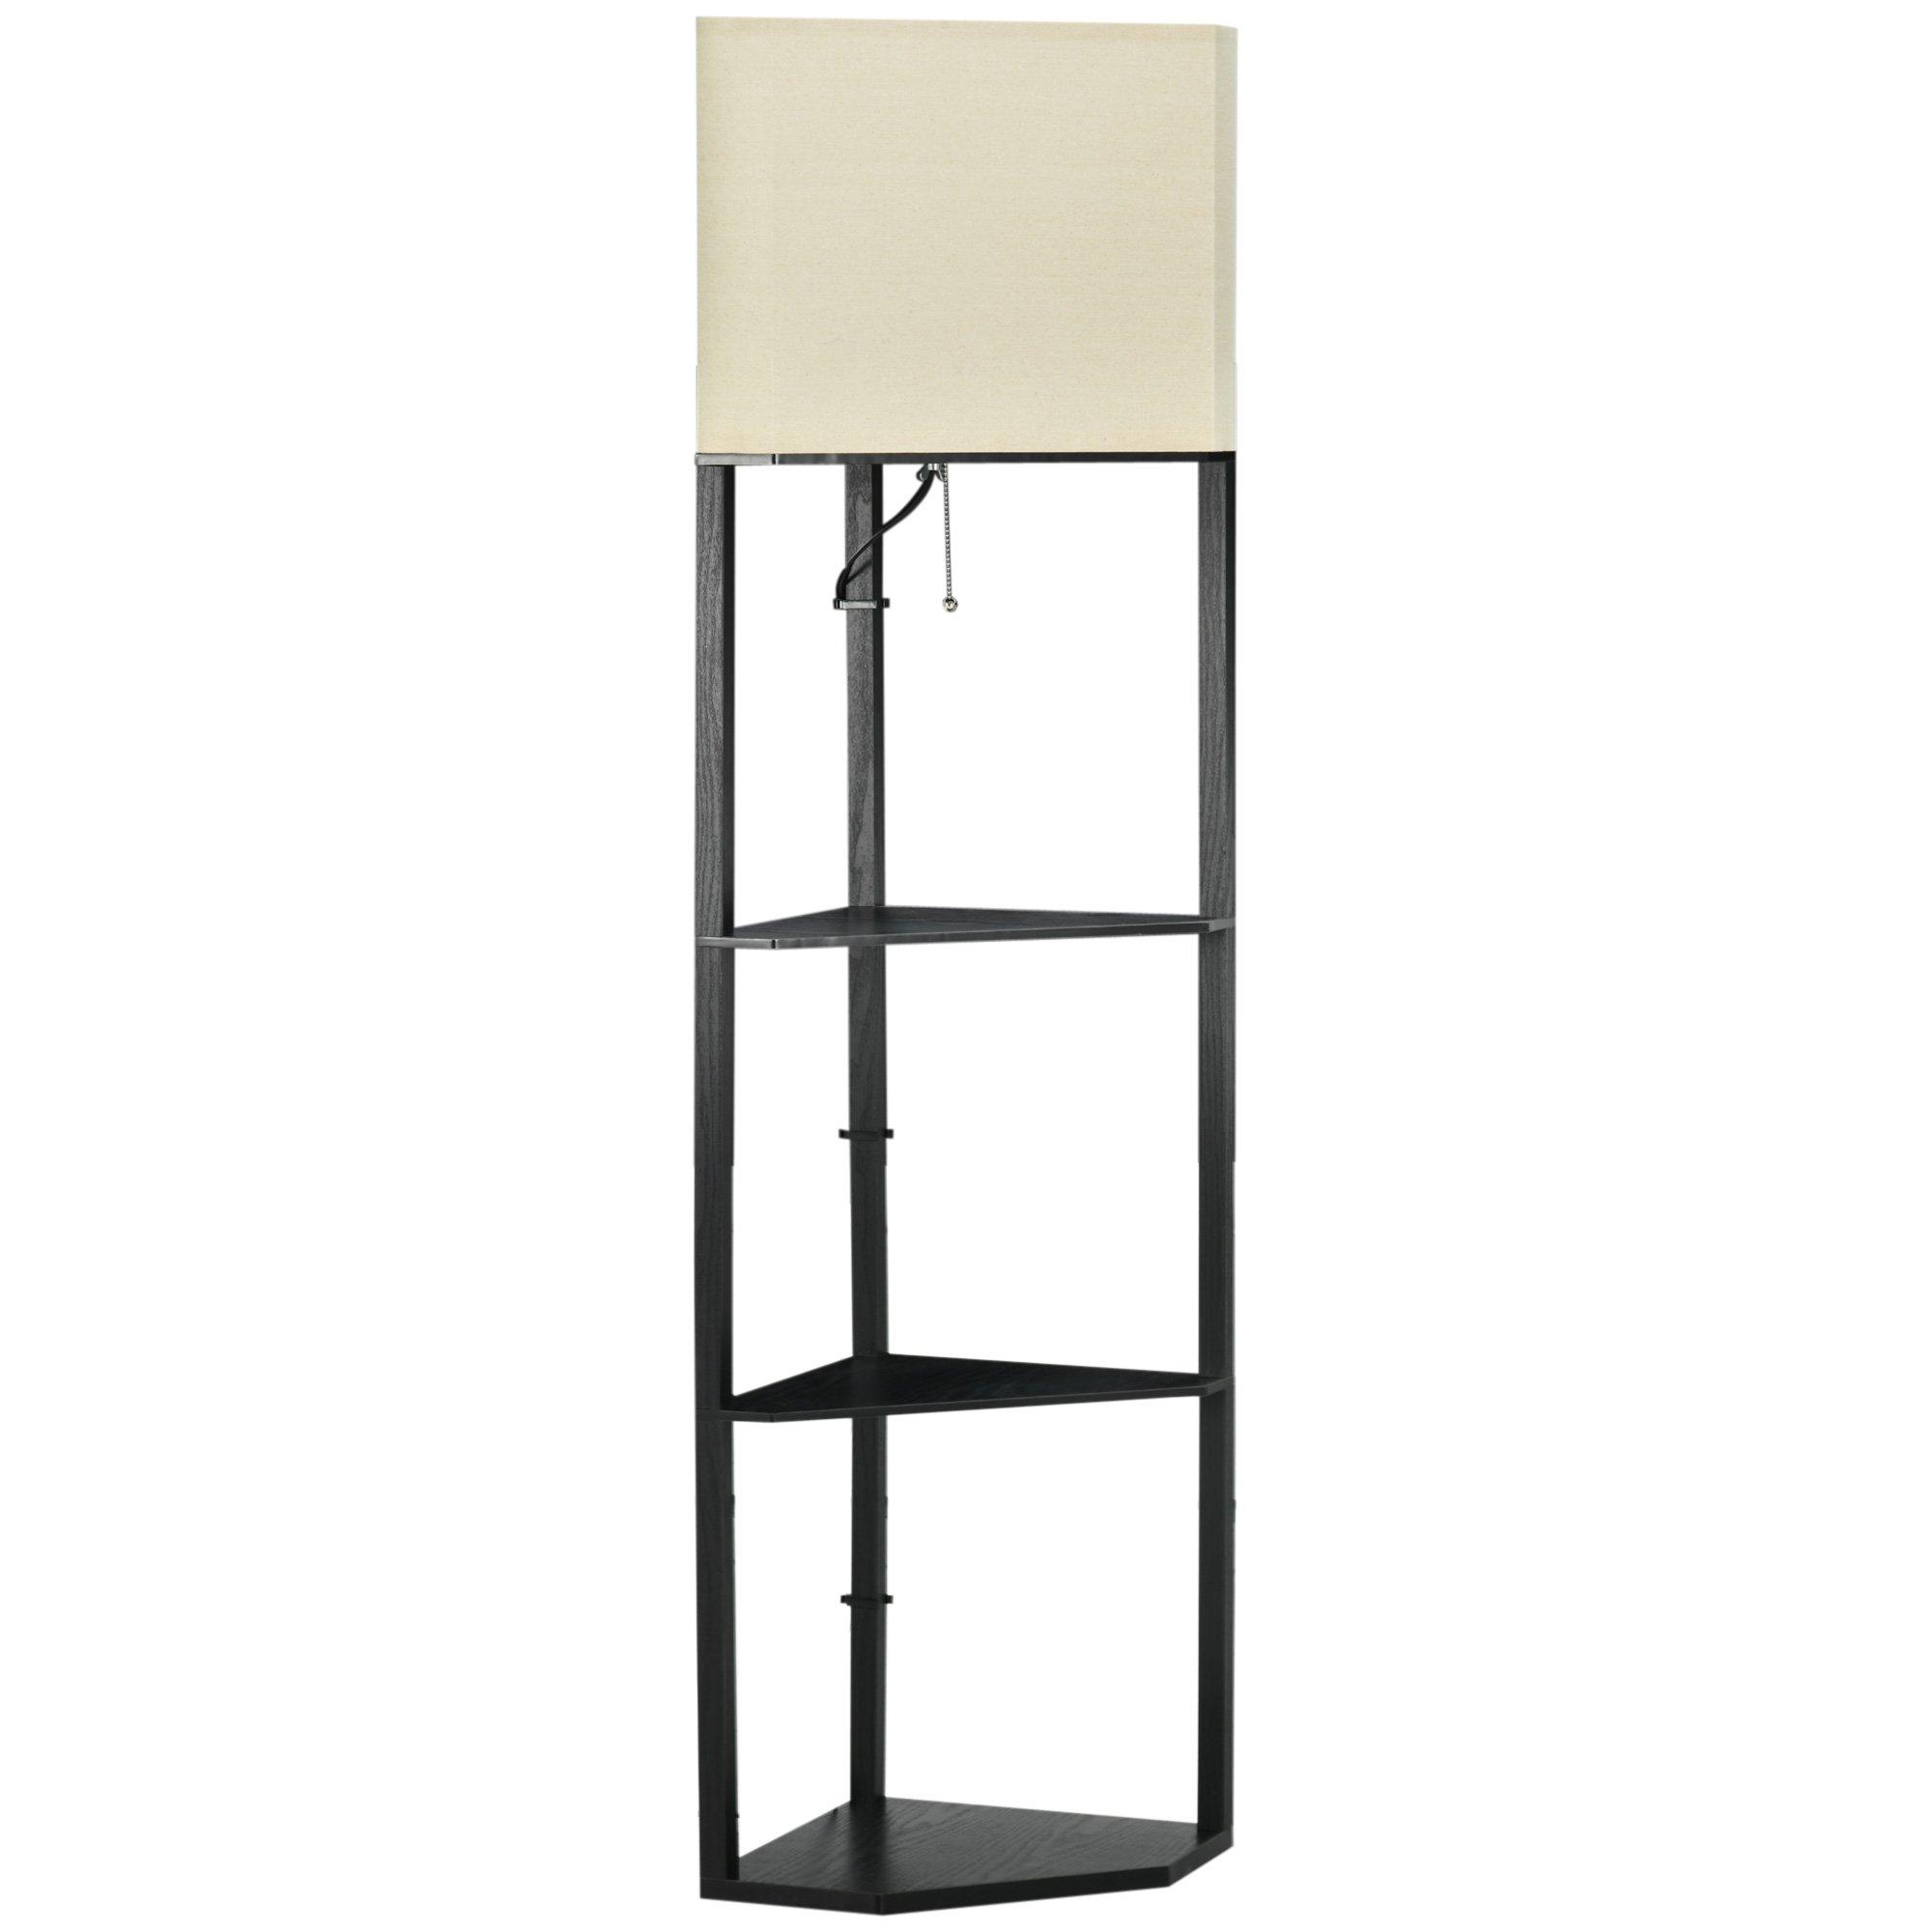 Corner Floor Lamp with Shelves, Modern Standing Lamps for Living